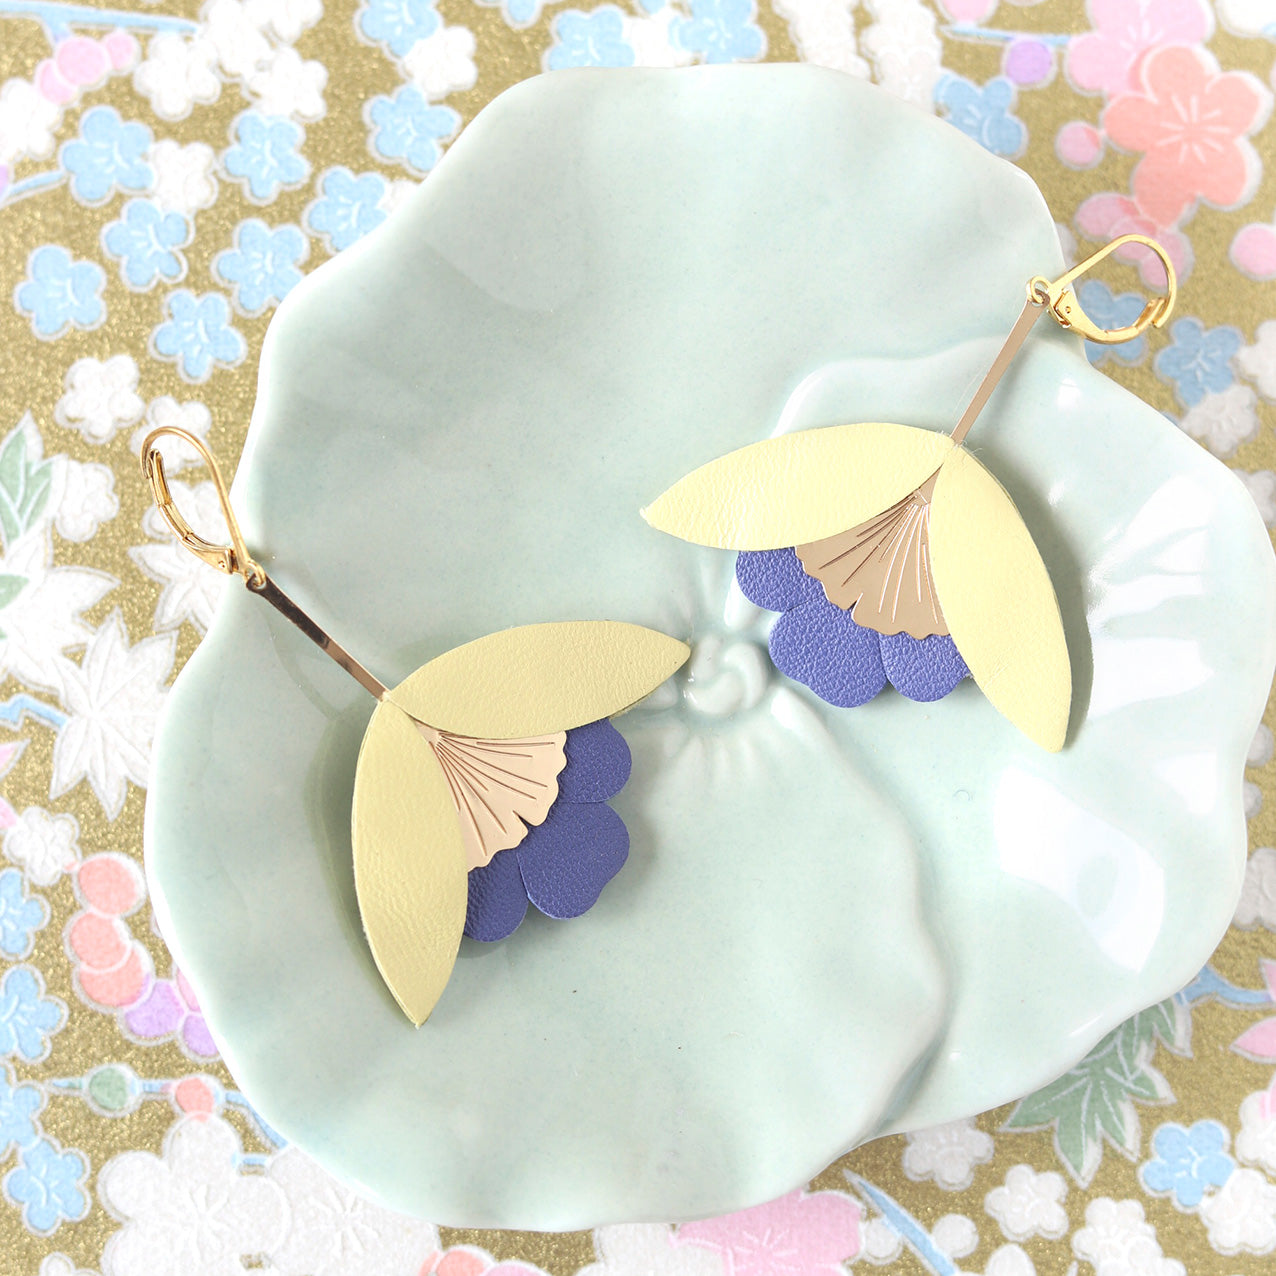 Ginkgo-Blumenohrringe aus hellgelbem und glockenblauem Leder